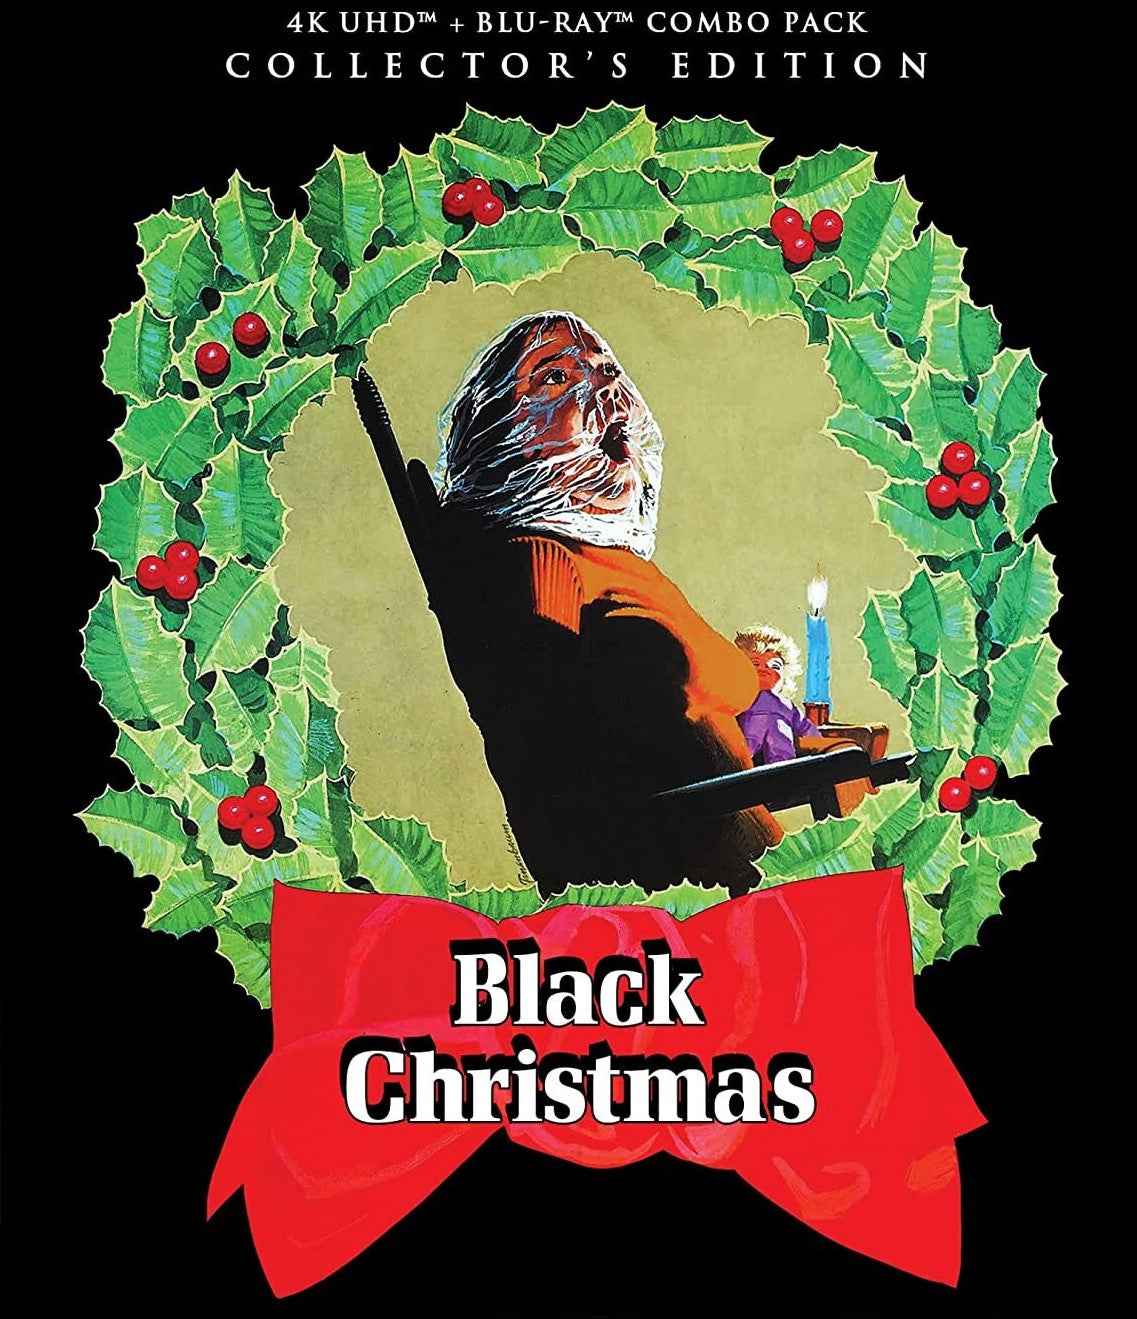 BLACK CHRISTMAS (COLLECTOR'S EDITION) 4K UHD/BLU-RAY